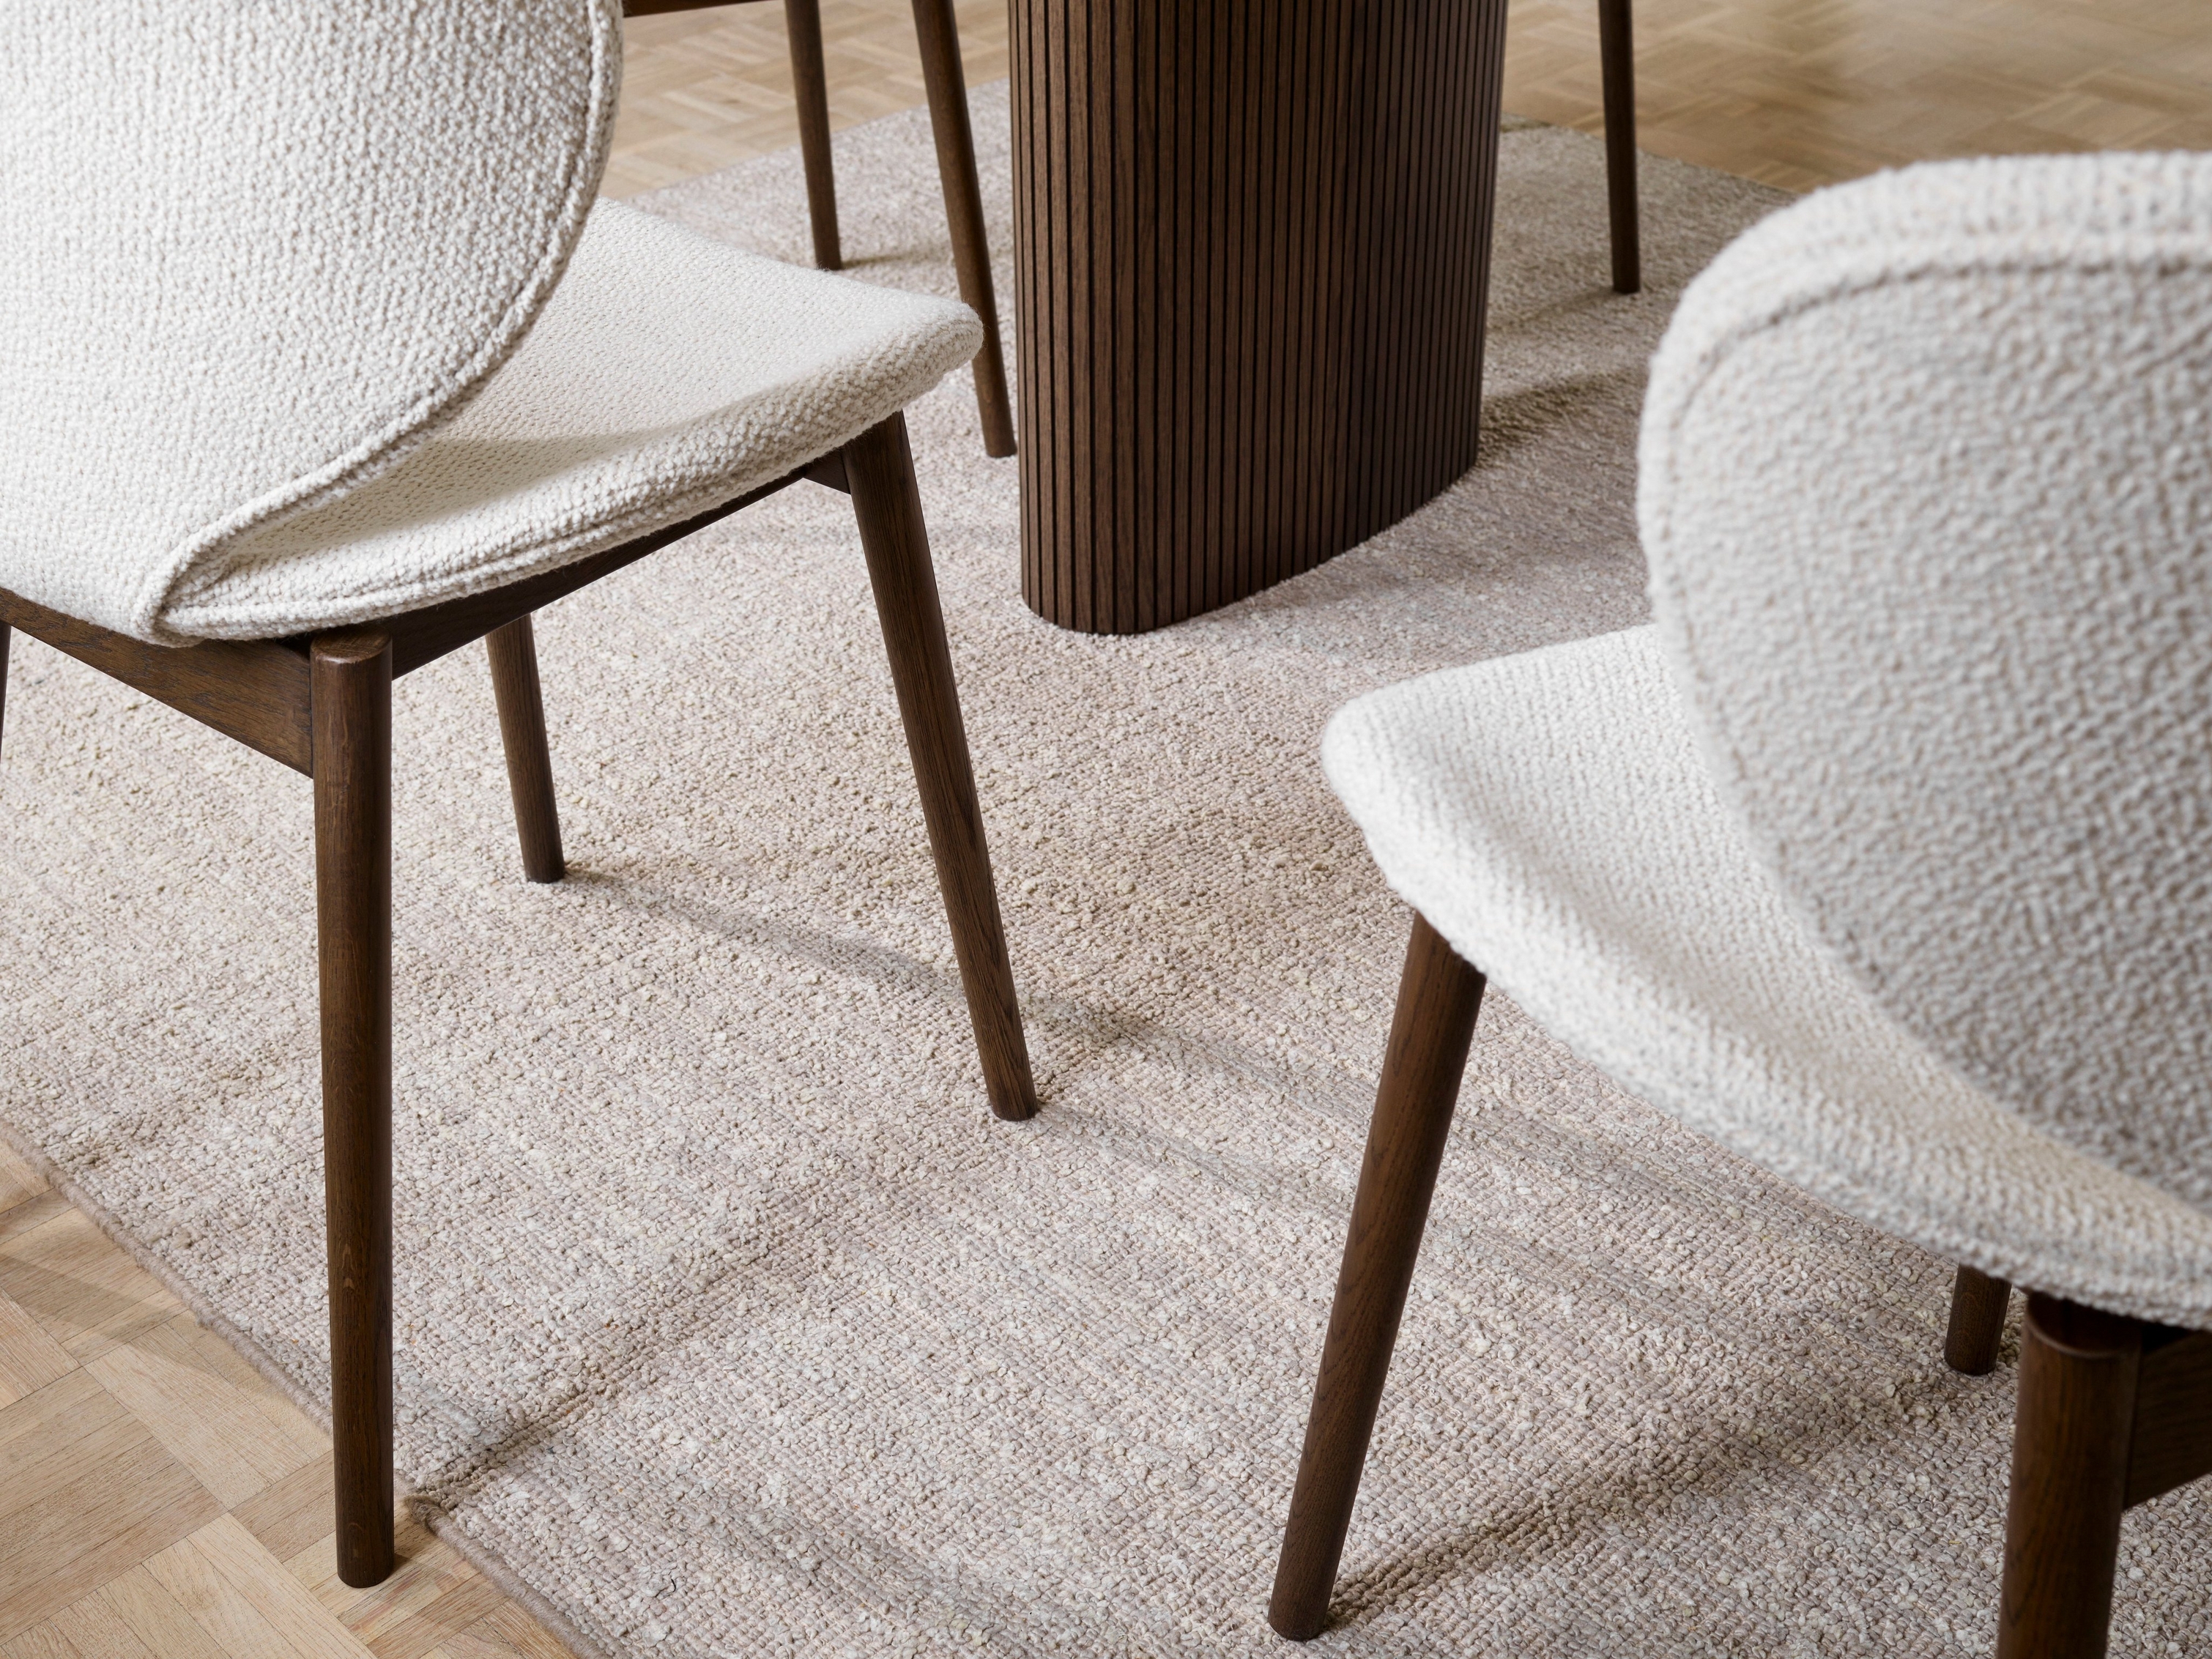 Strukturerede Hamilton stole og træbord på tæppe, hvor fokus er på gulvets detaljer.